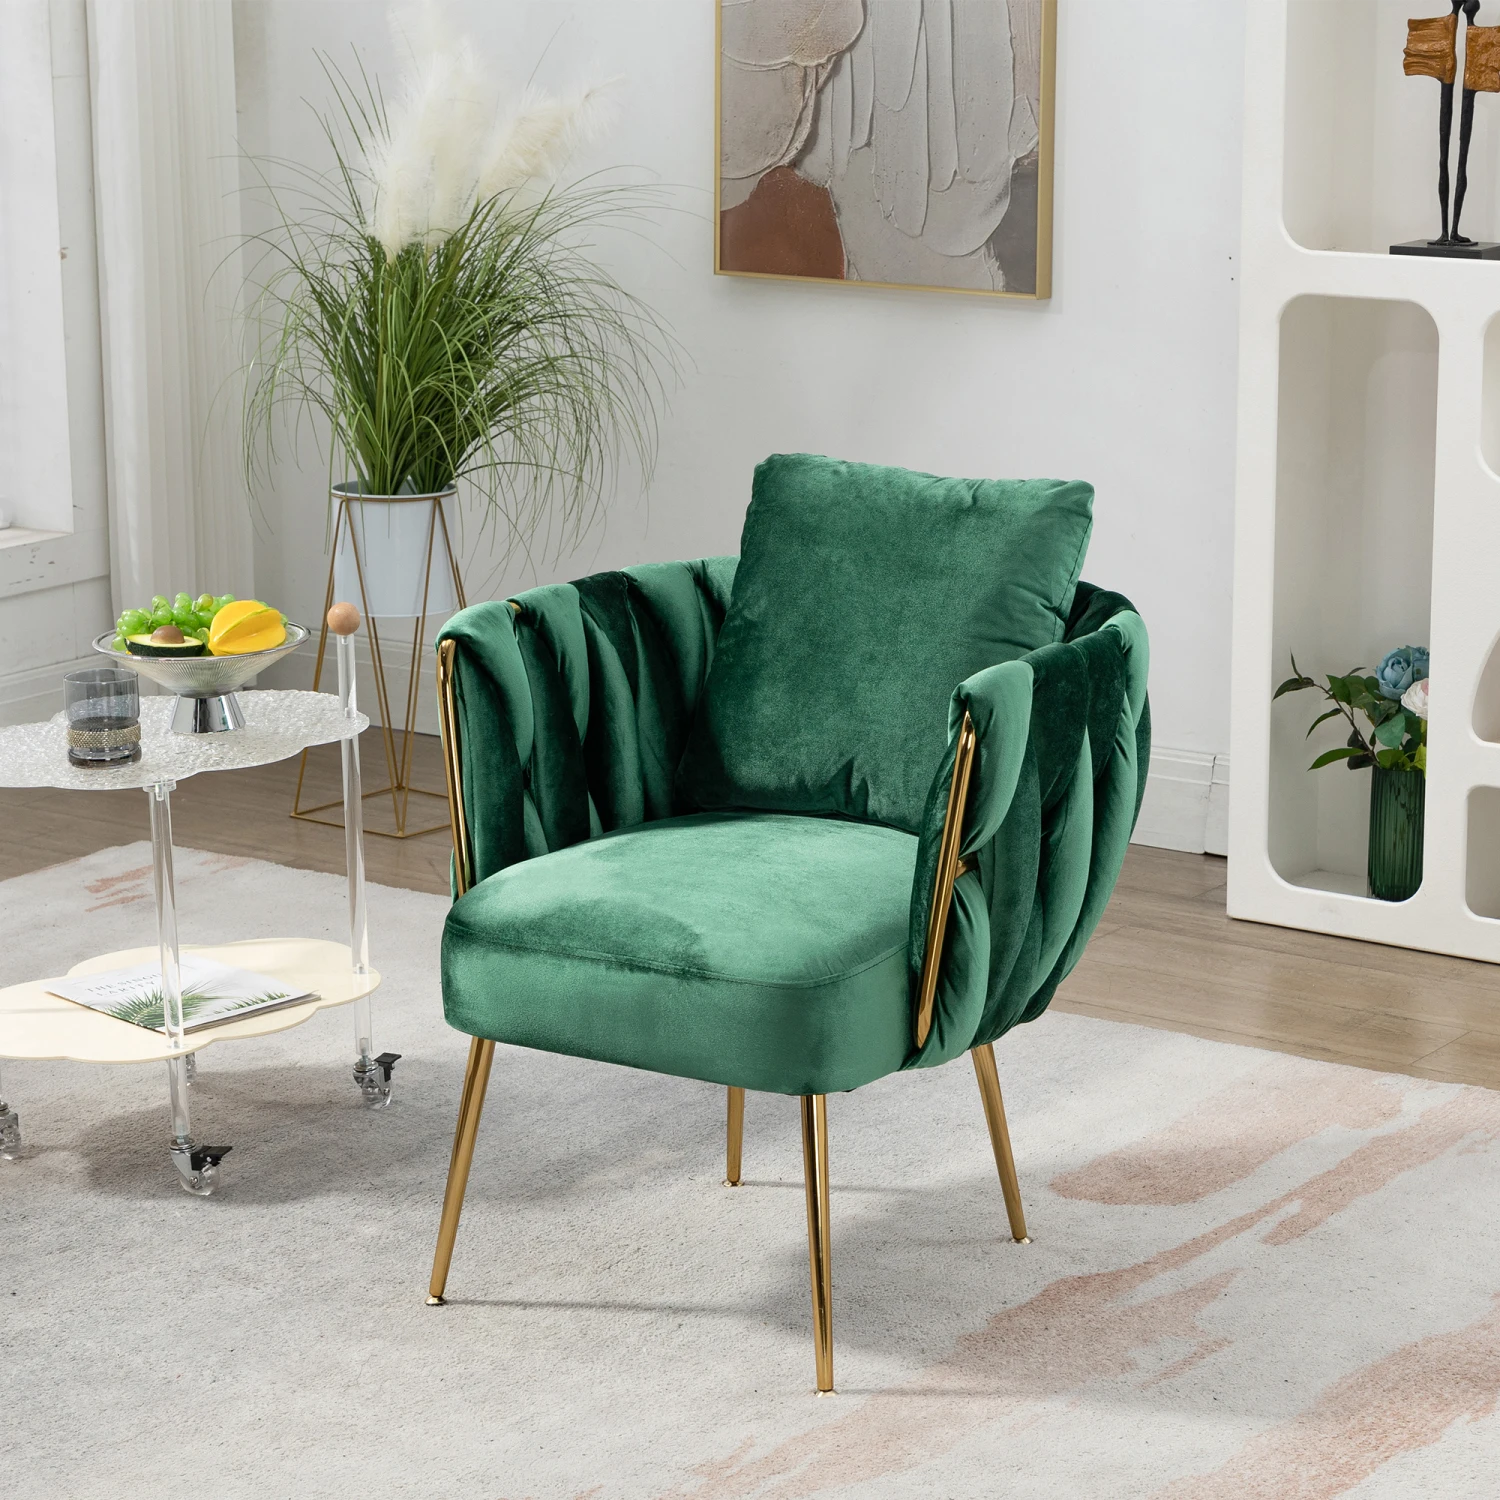 

Широкий Современный бархатный стул ручной работы зеленого цвета с золотистыми металлическими ножками, мягкое кресло для гостиной, спальни, офиса-Lux